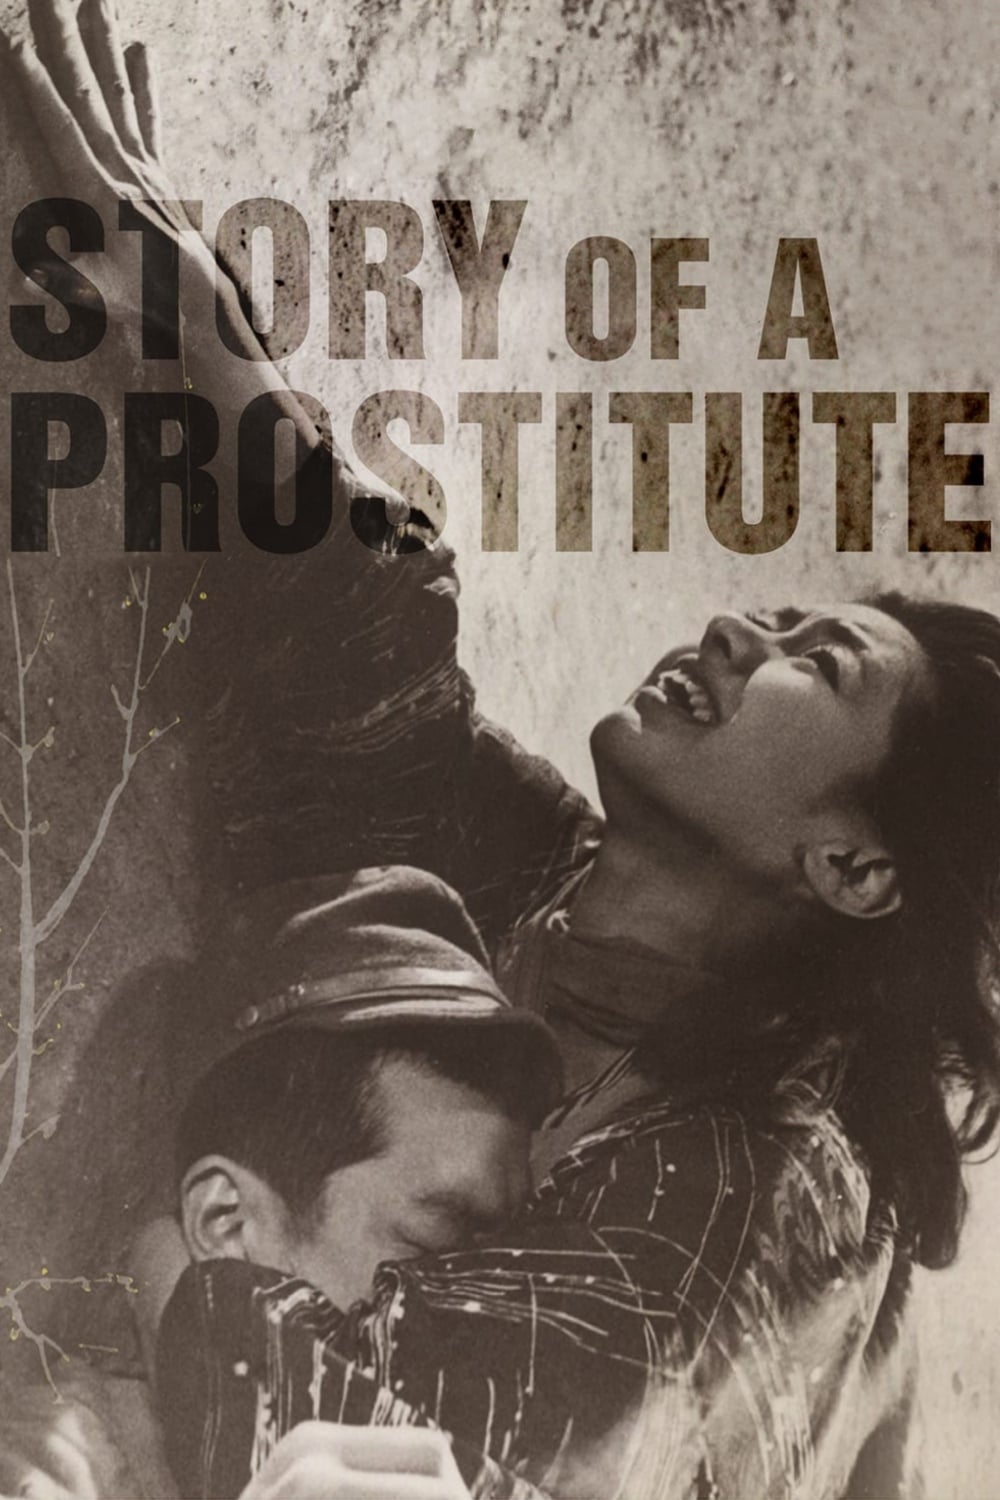 Histoire d'une prostituée (1965)